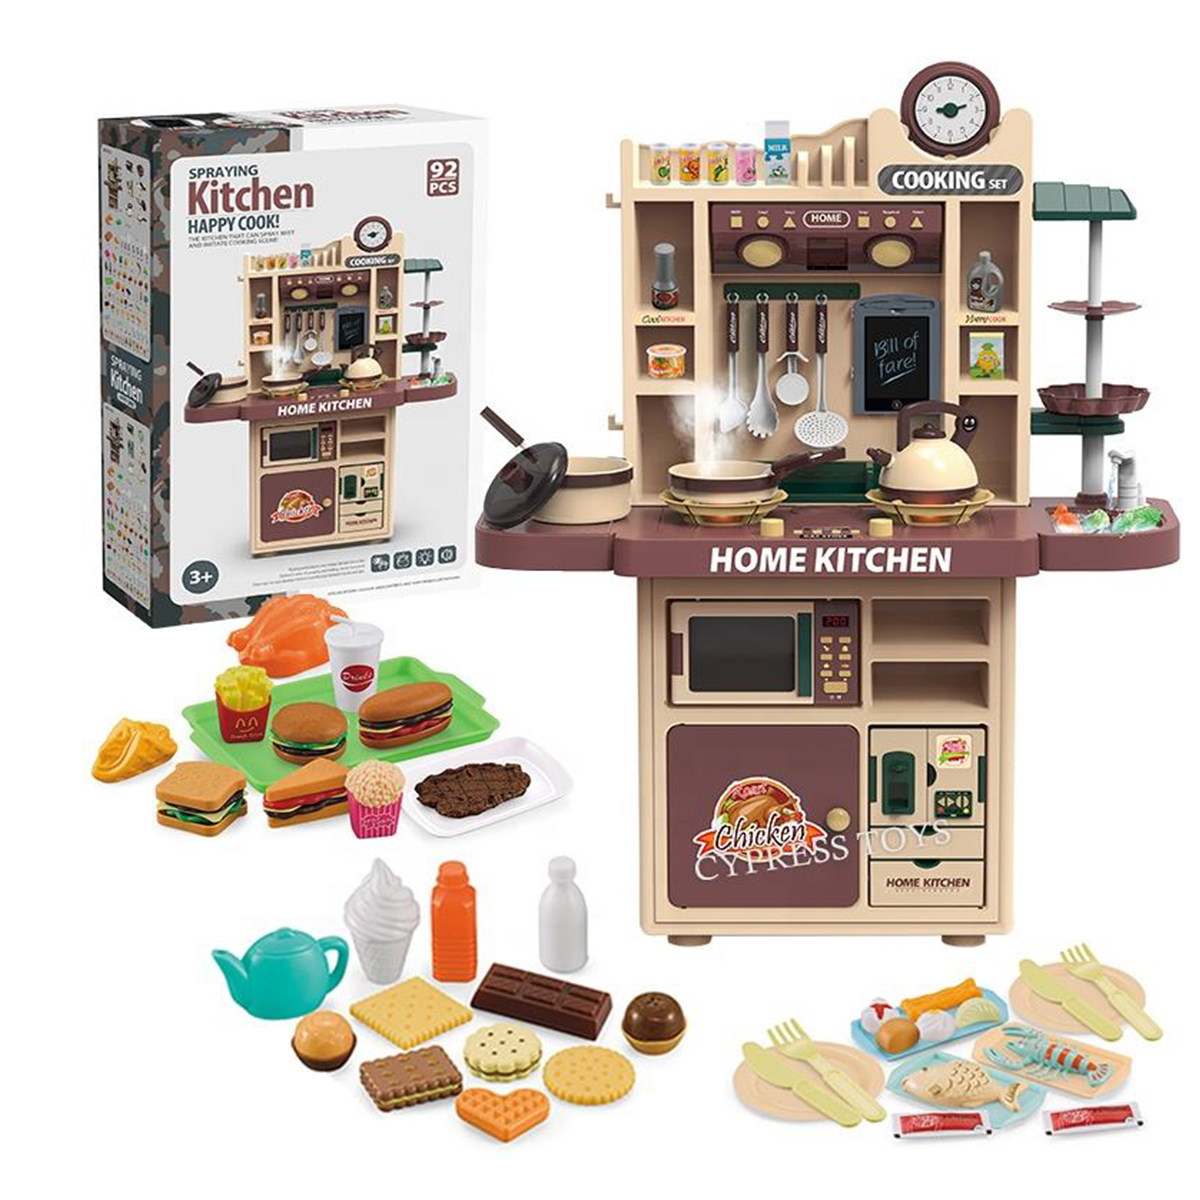 ست اسباب بازی آشپزخانه مدل Home kitchen مجموعه 92 عددی